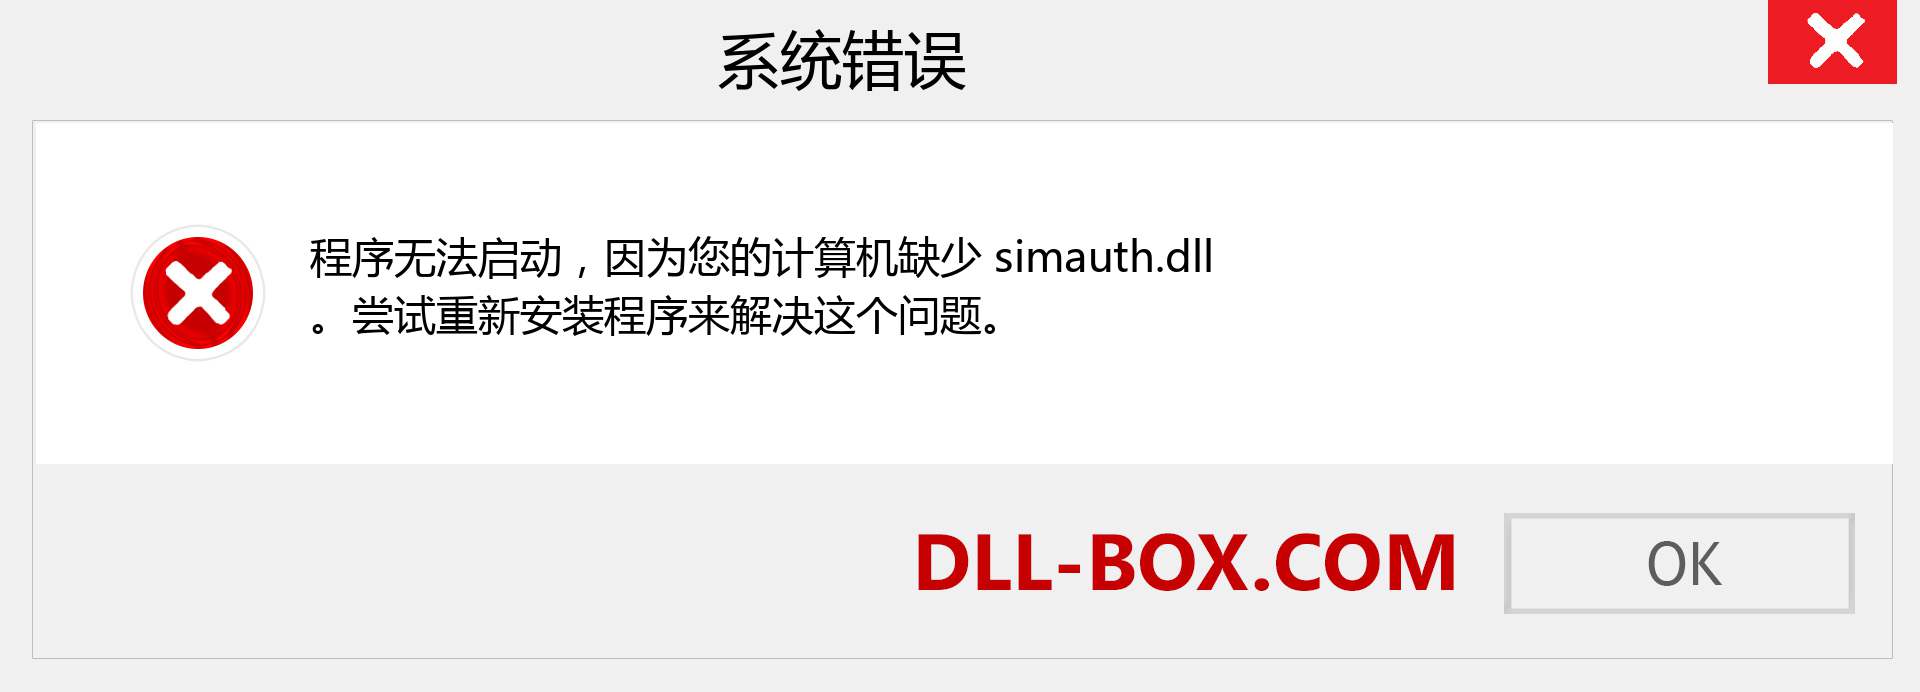 simauth.dll 文件丢失？。 适用于 Windows 7、8、10 的下载 - 修复 Windows、照片、图像上的 simauth dll 丢失错误